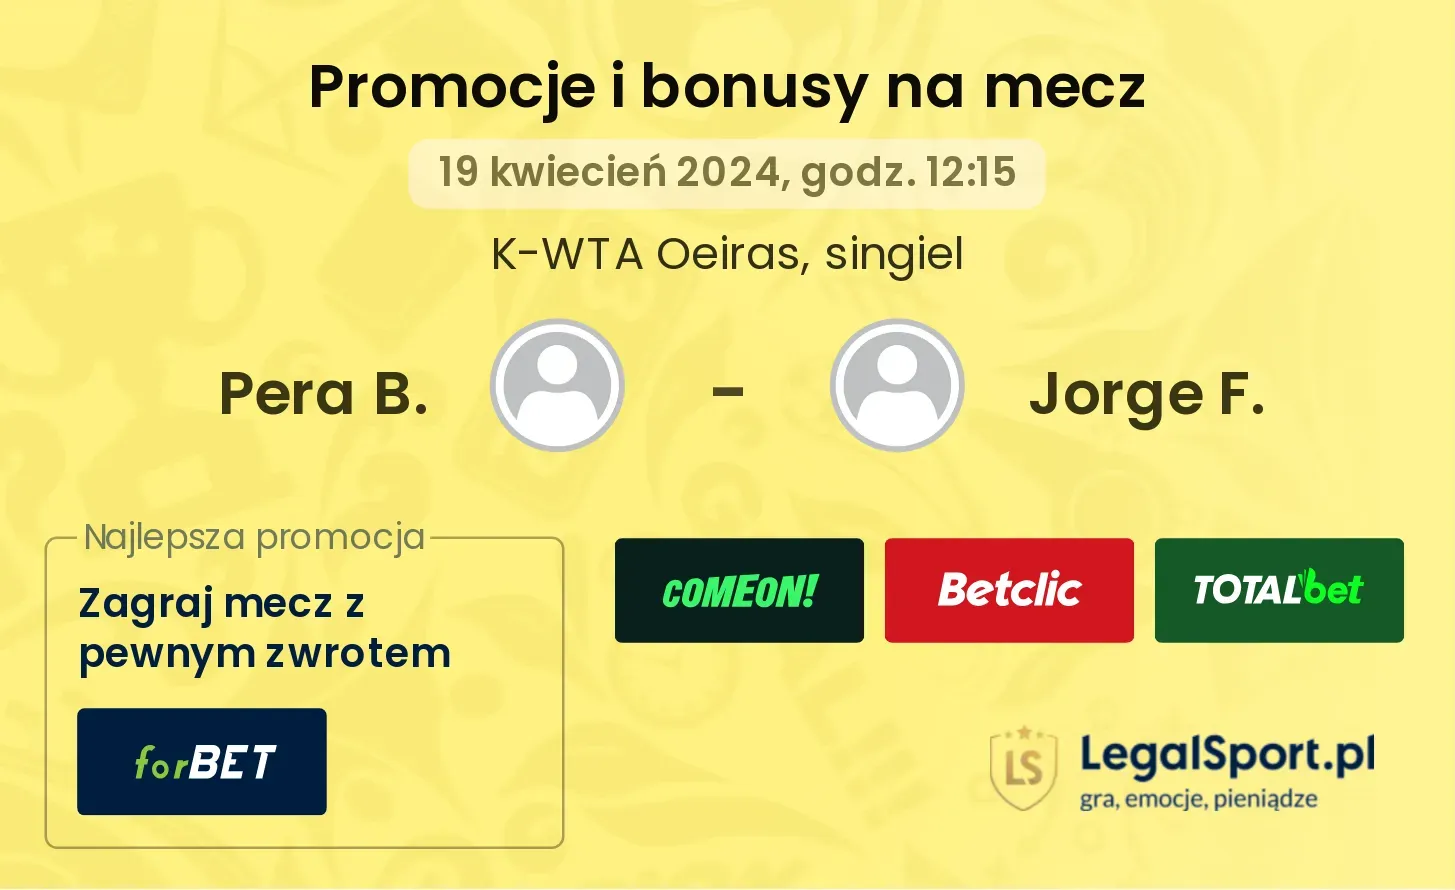 Pera B. - Jorge F. promocje bonusy na mecz